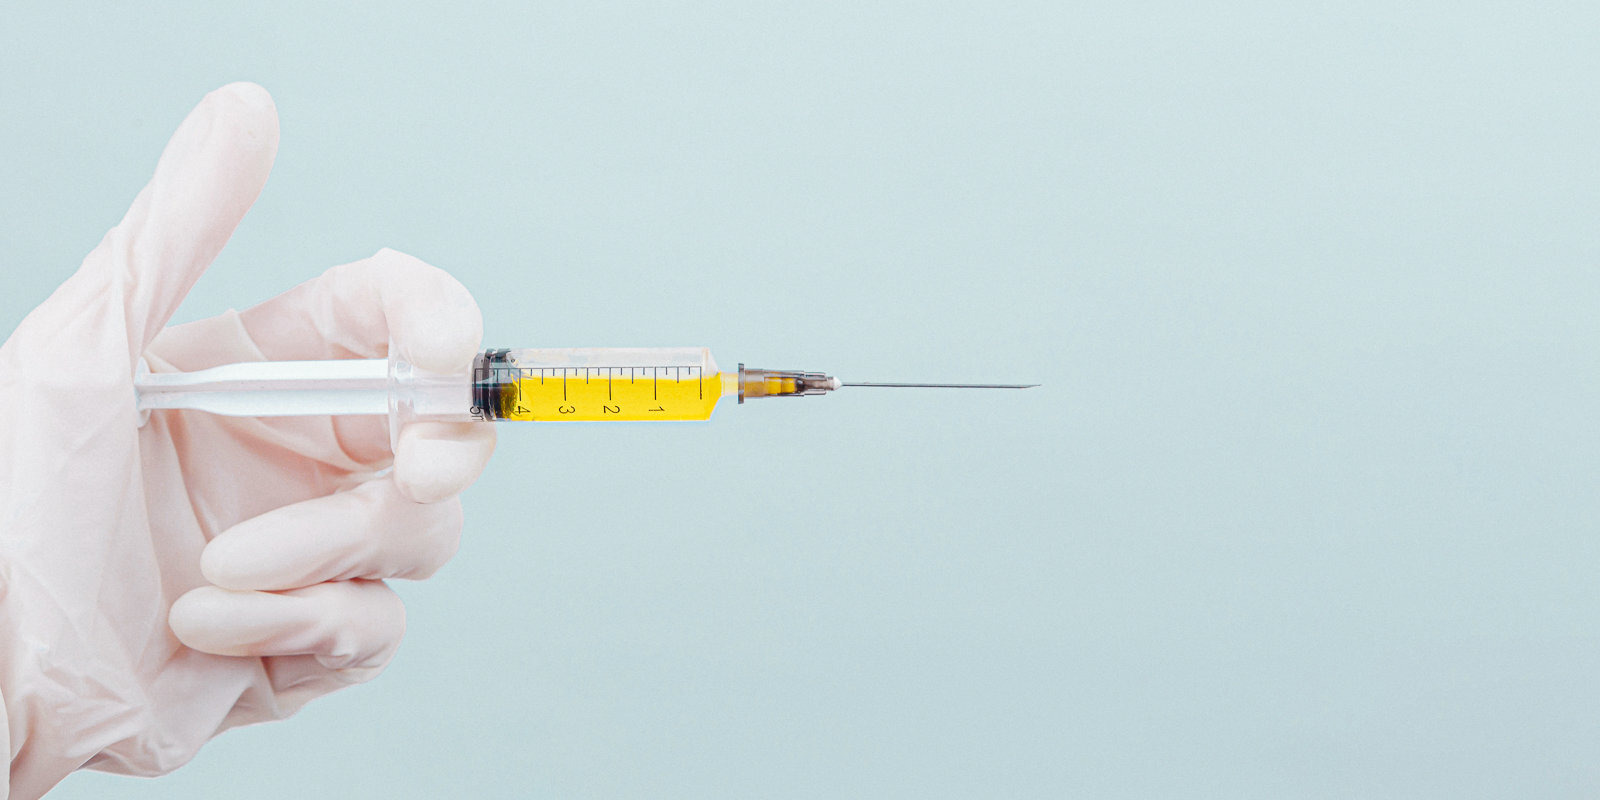 Прививка или увольнение: может ли работодатель заставить вакцинироваться против Covid-19?